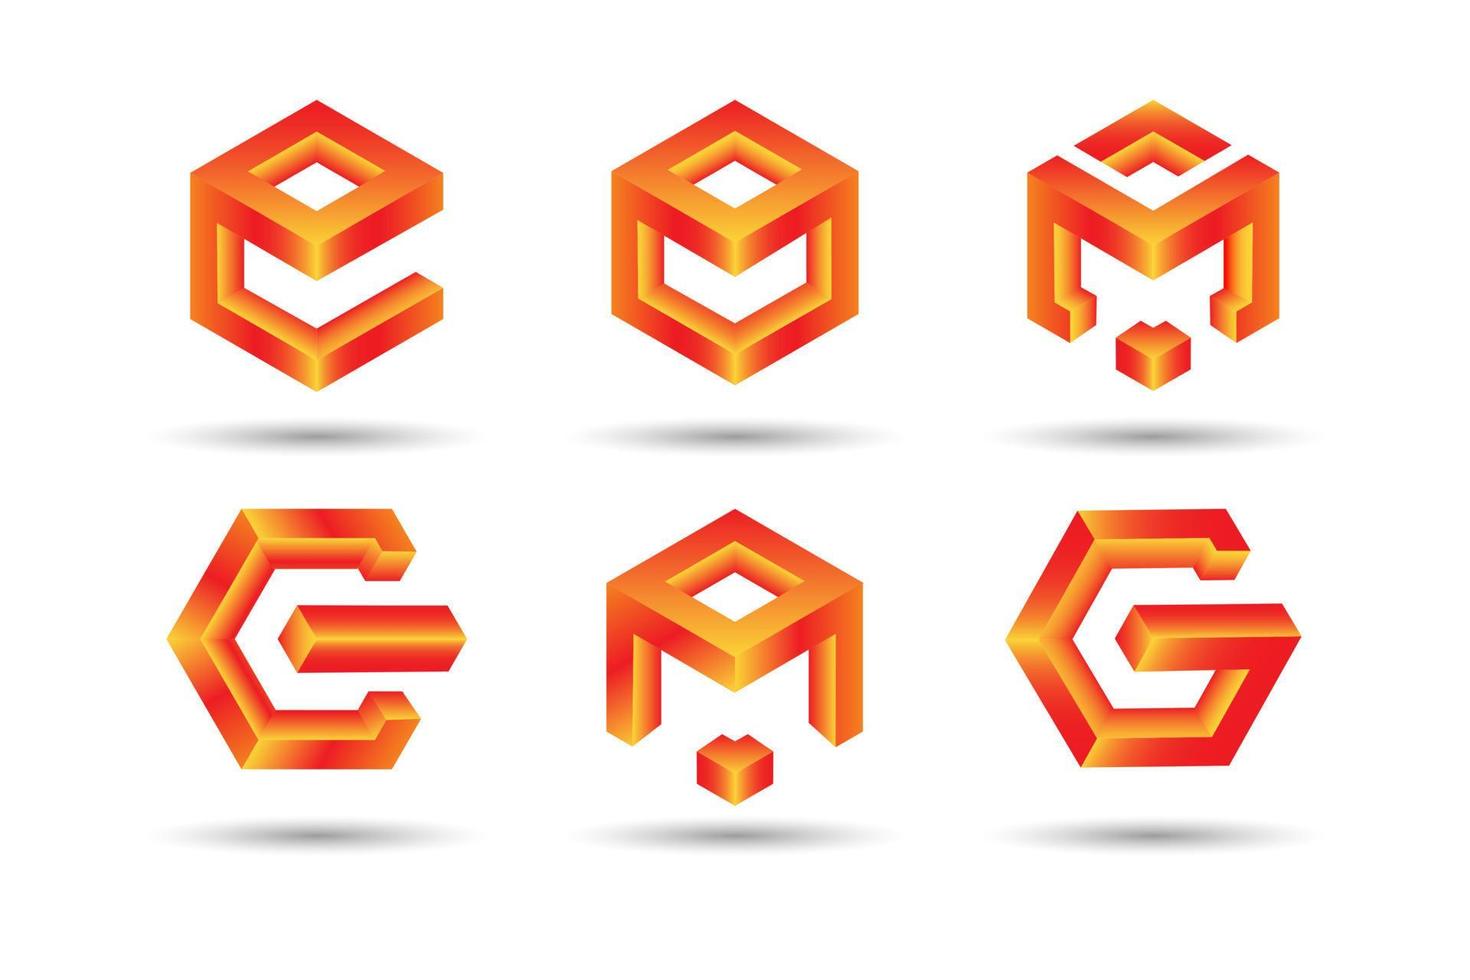 uma coleção de logotipos de letras a, e, m e g em um estilo 3d de forma de cubo vetor